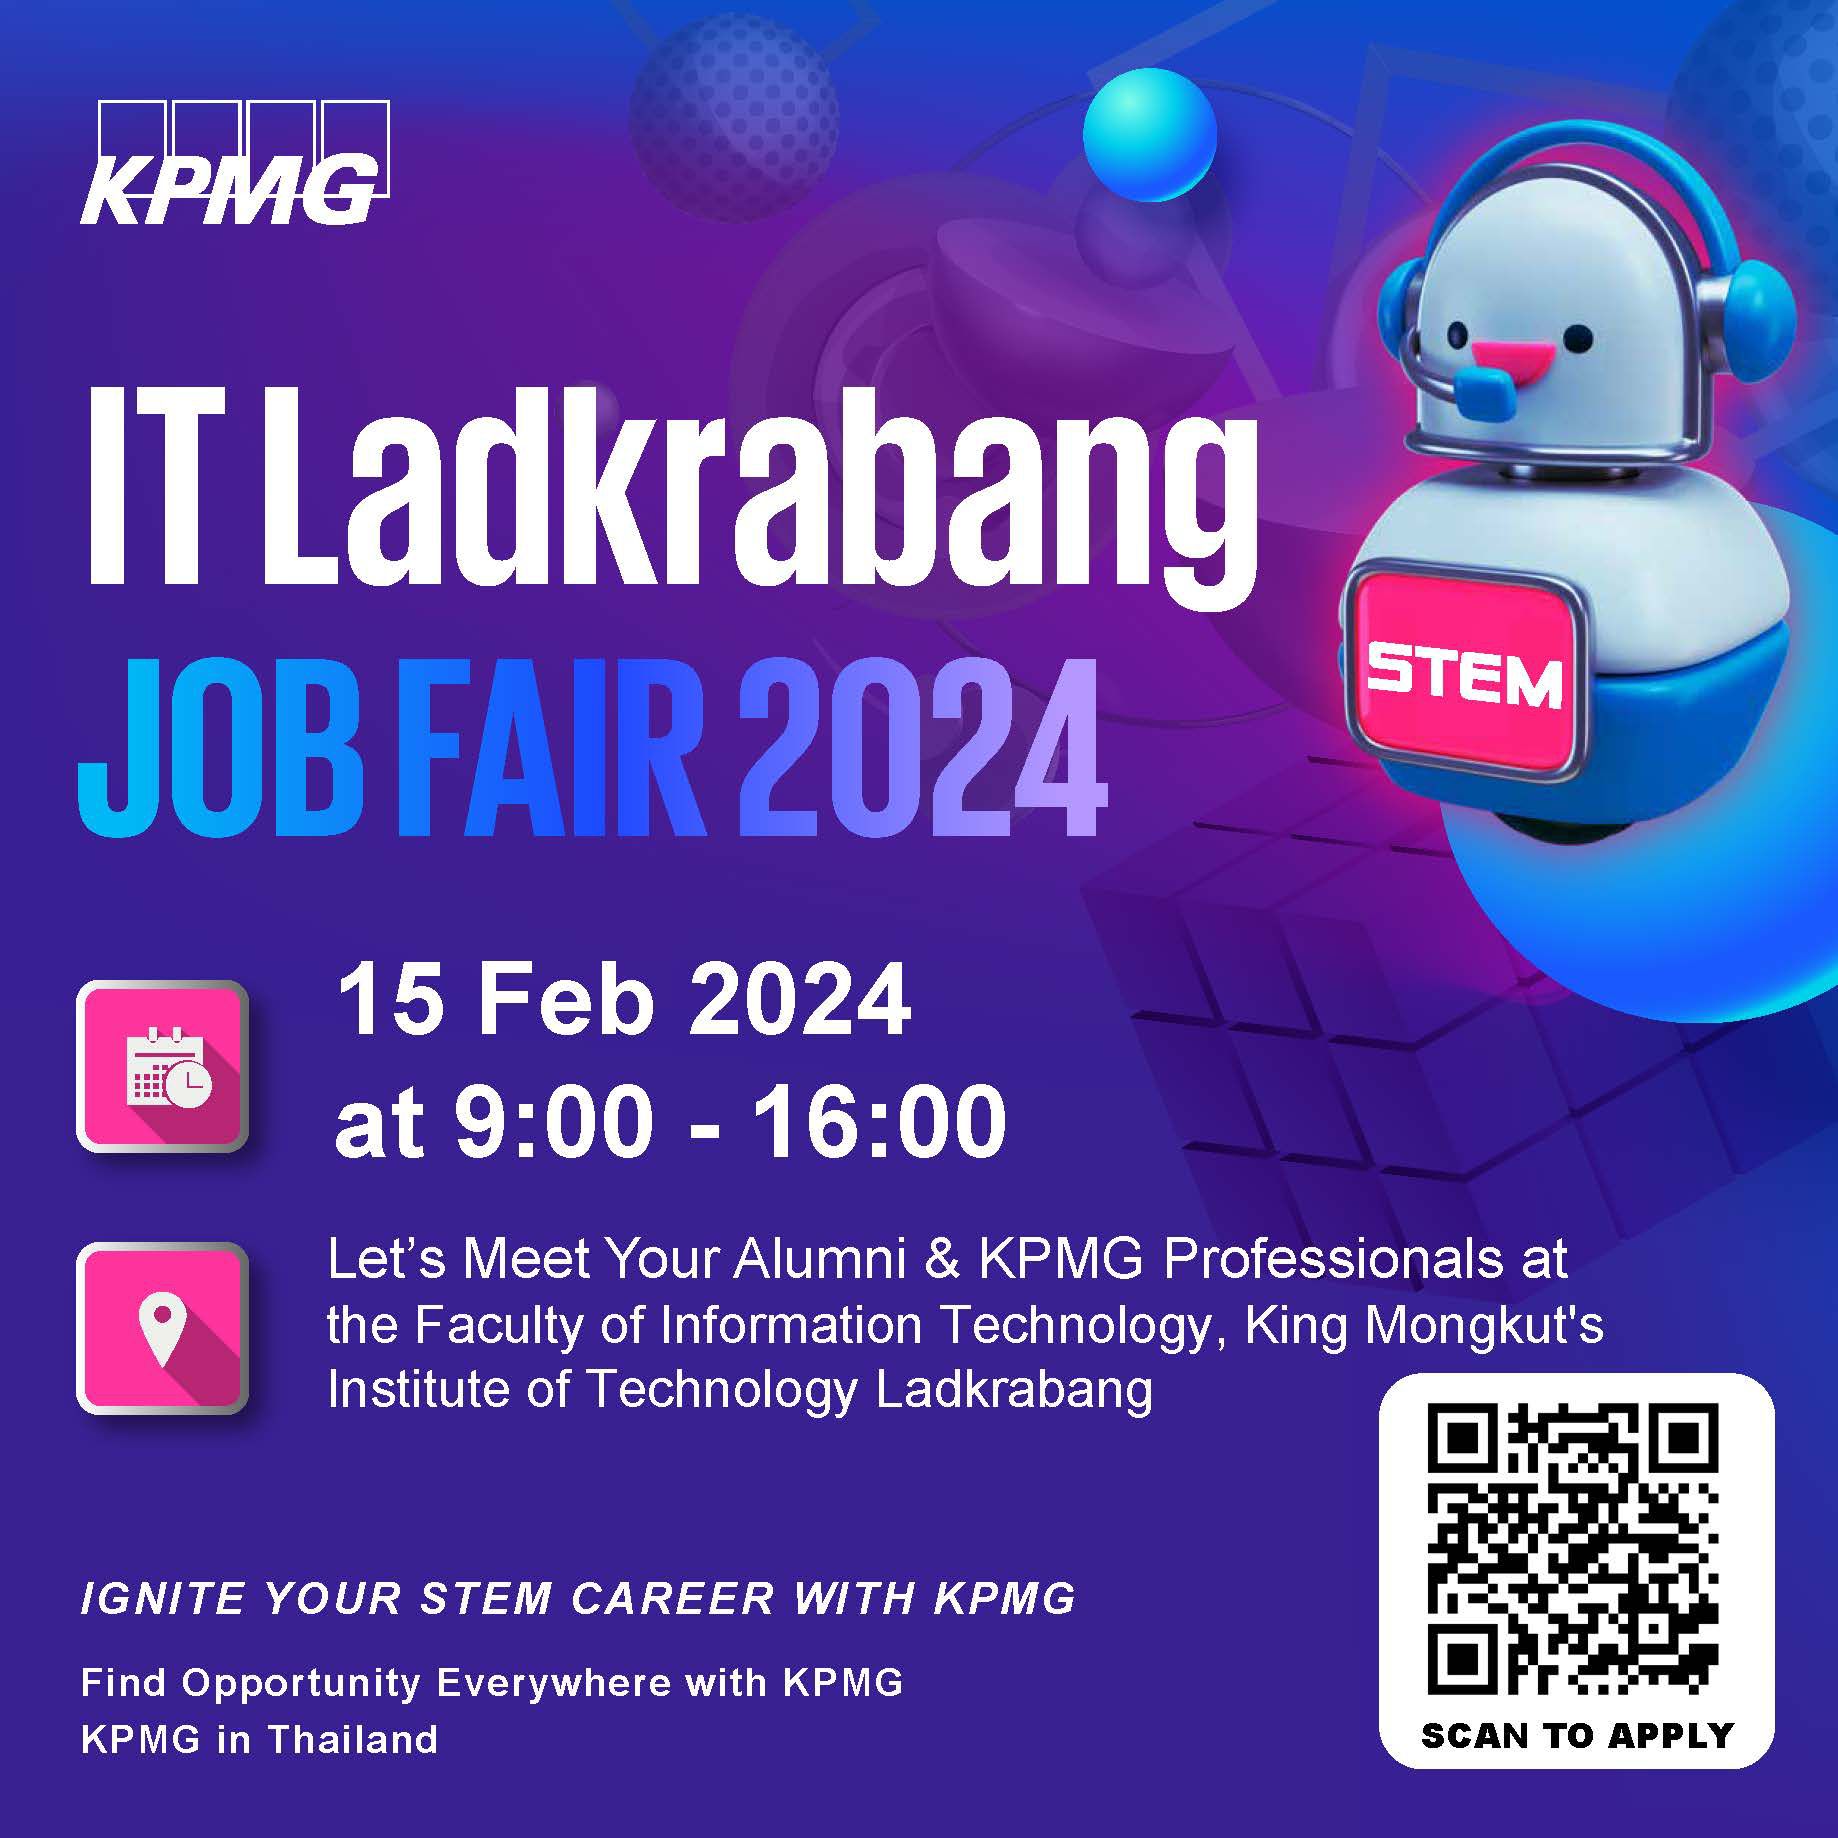 IT Ladkrabang Job fair 2024